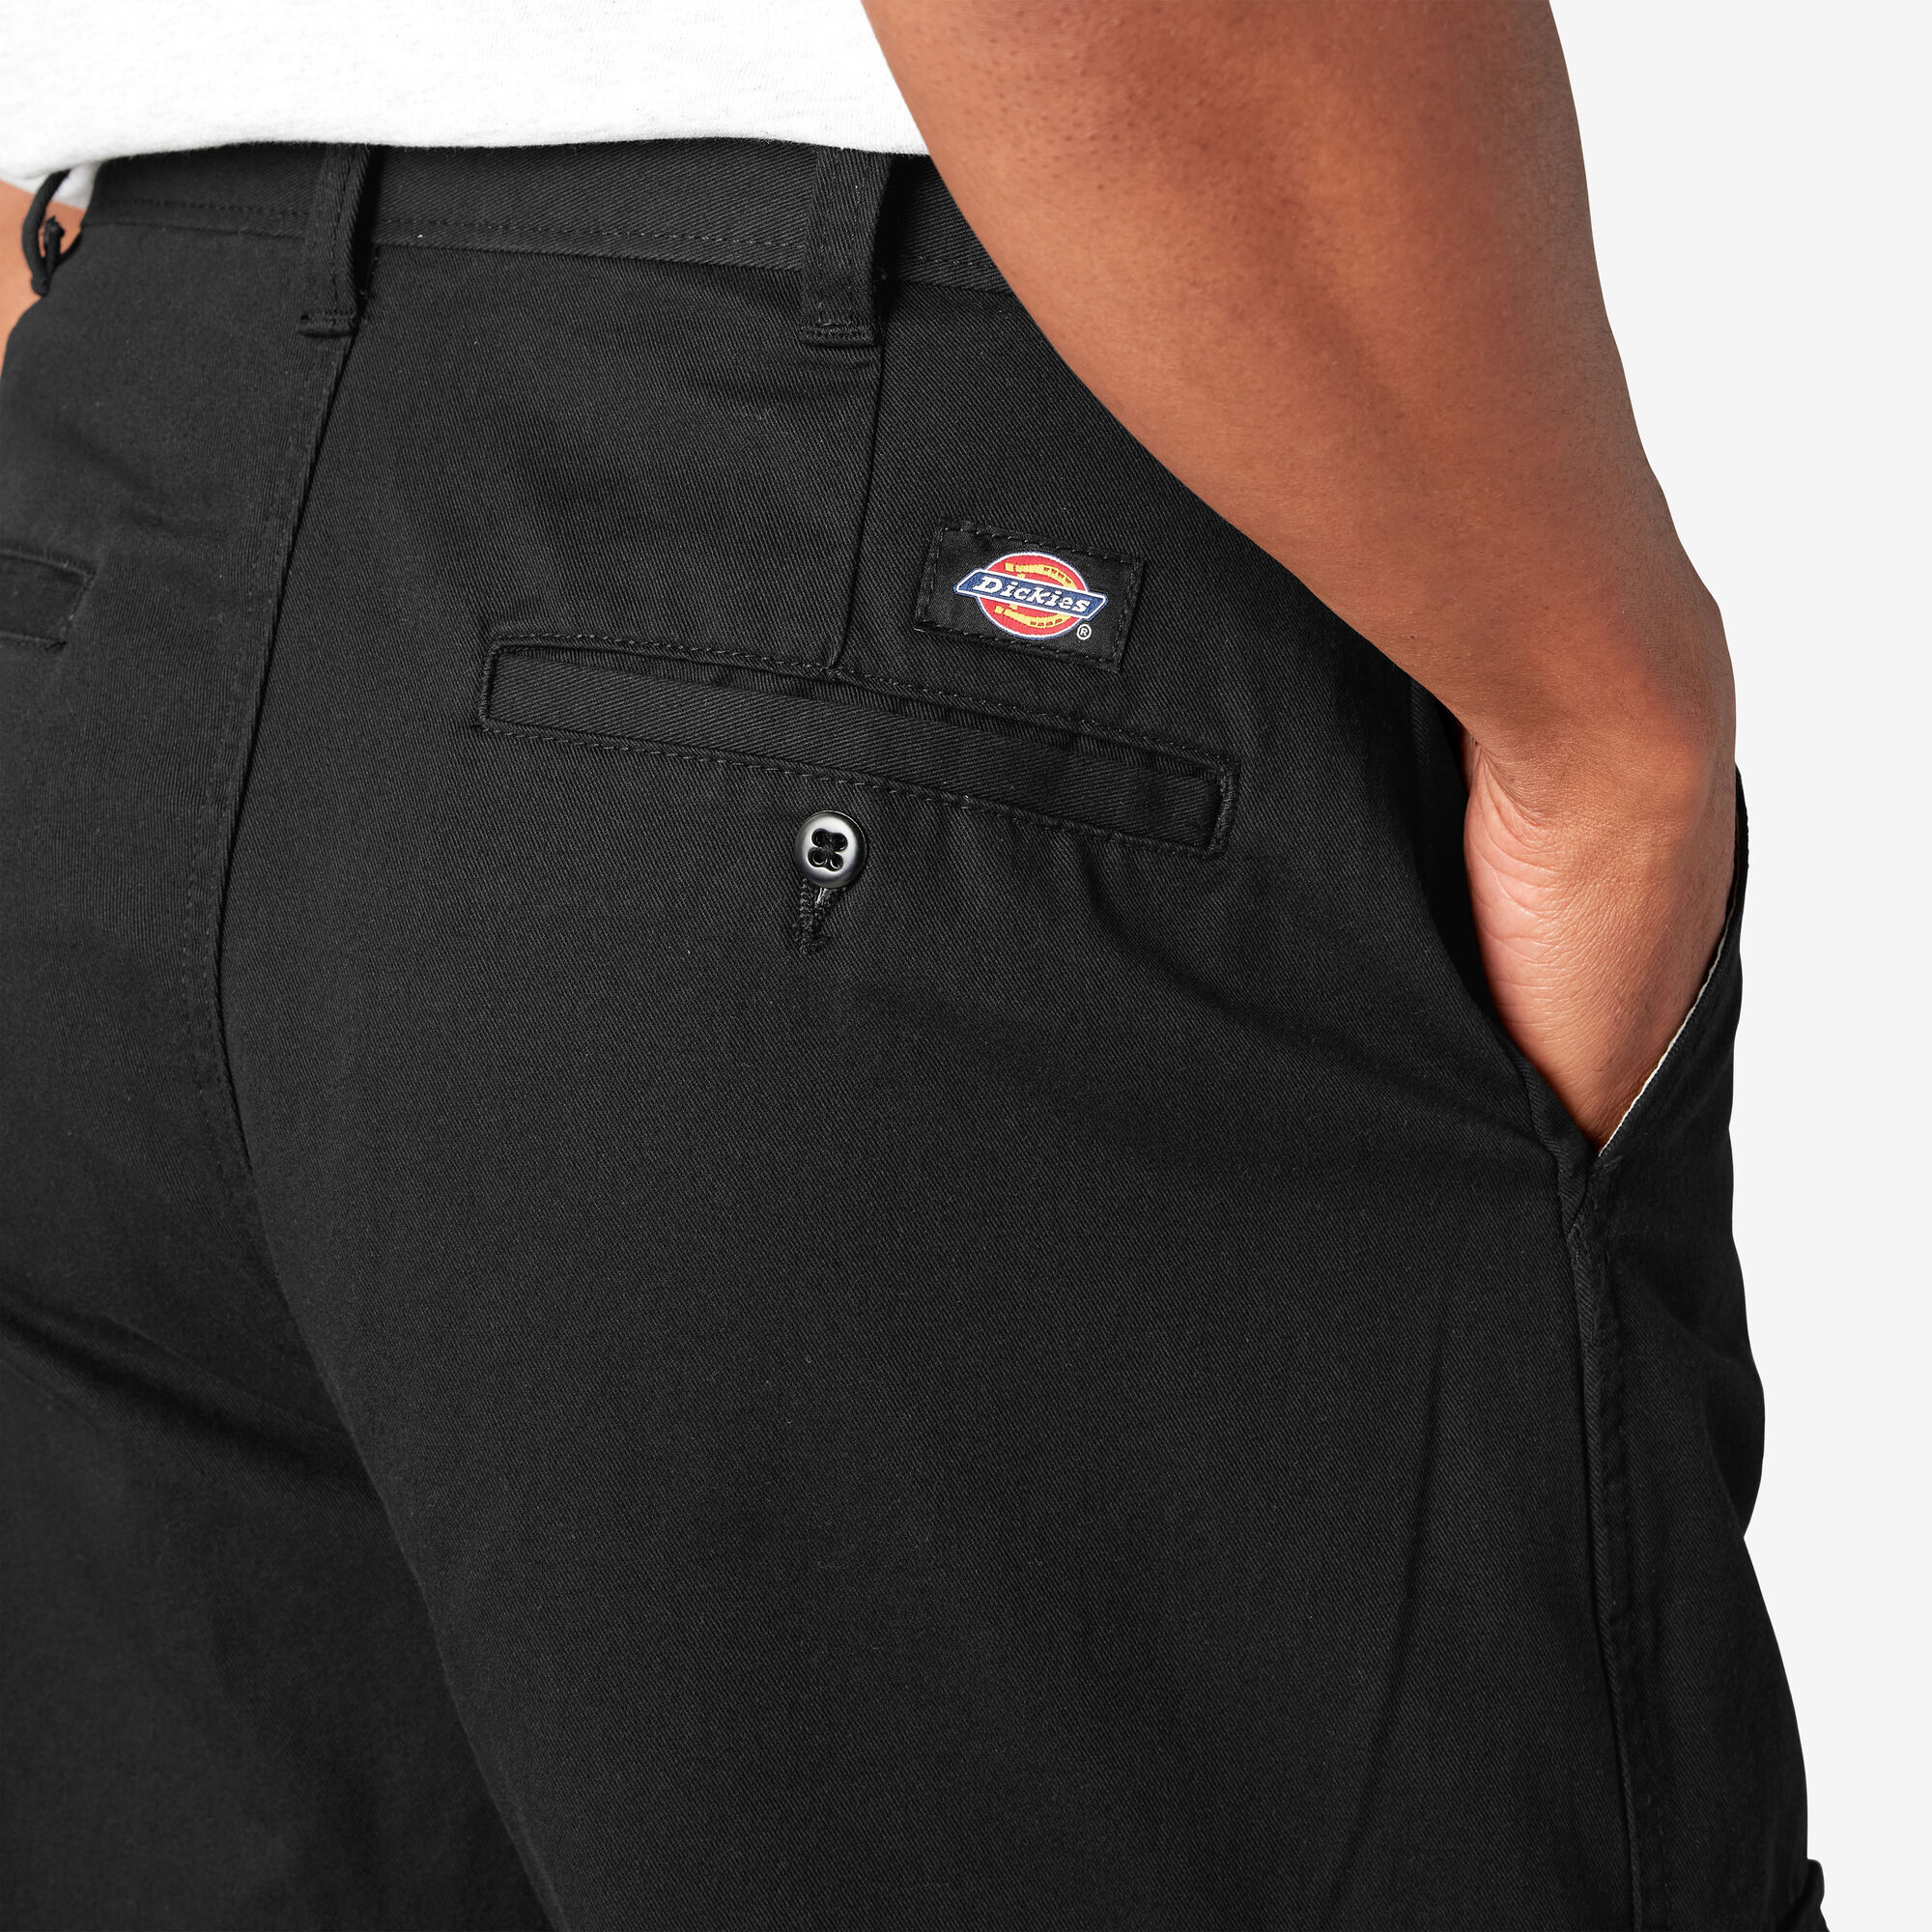 Loose Fit Cargo Pants For Men | Dickies